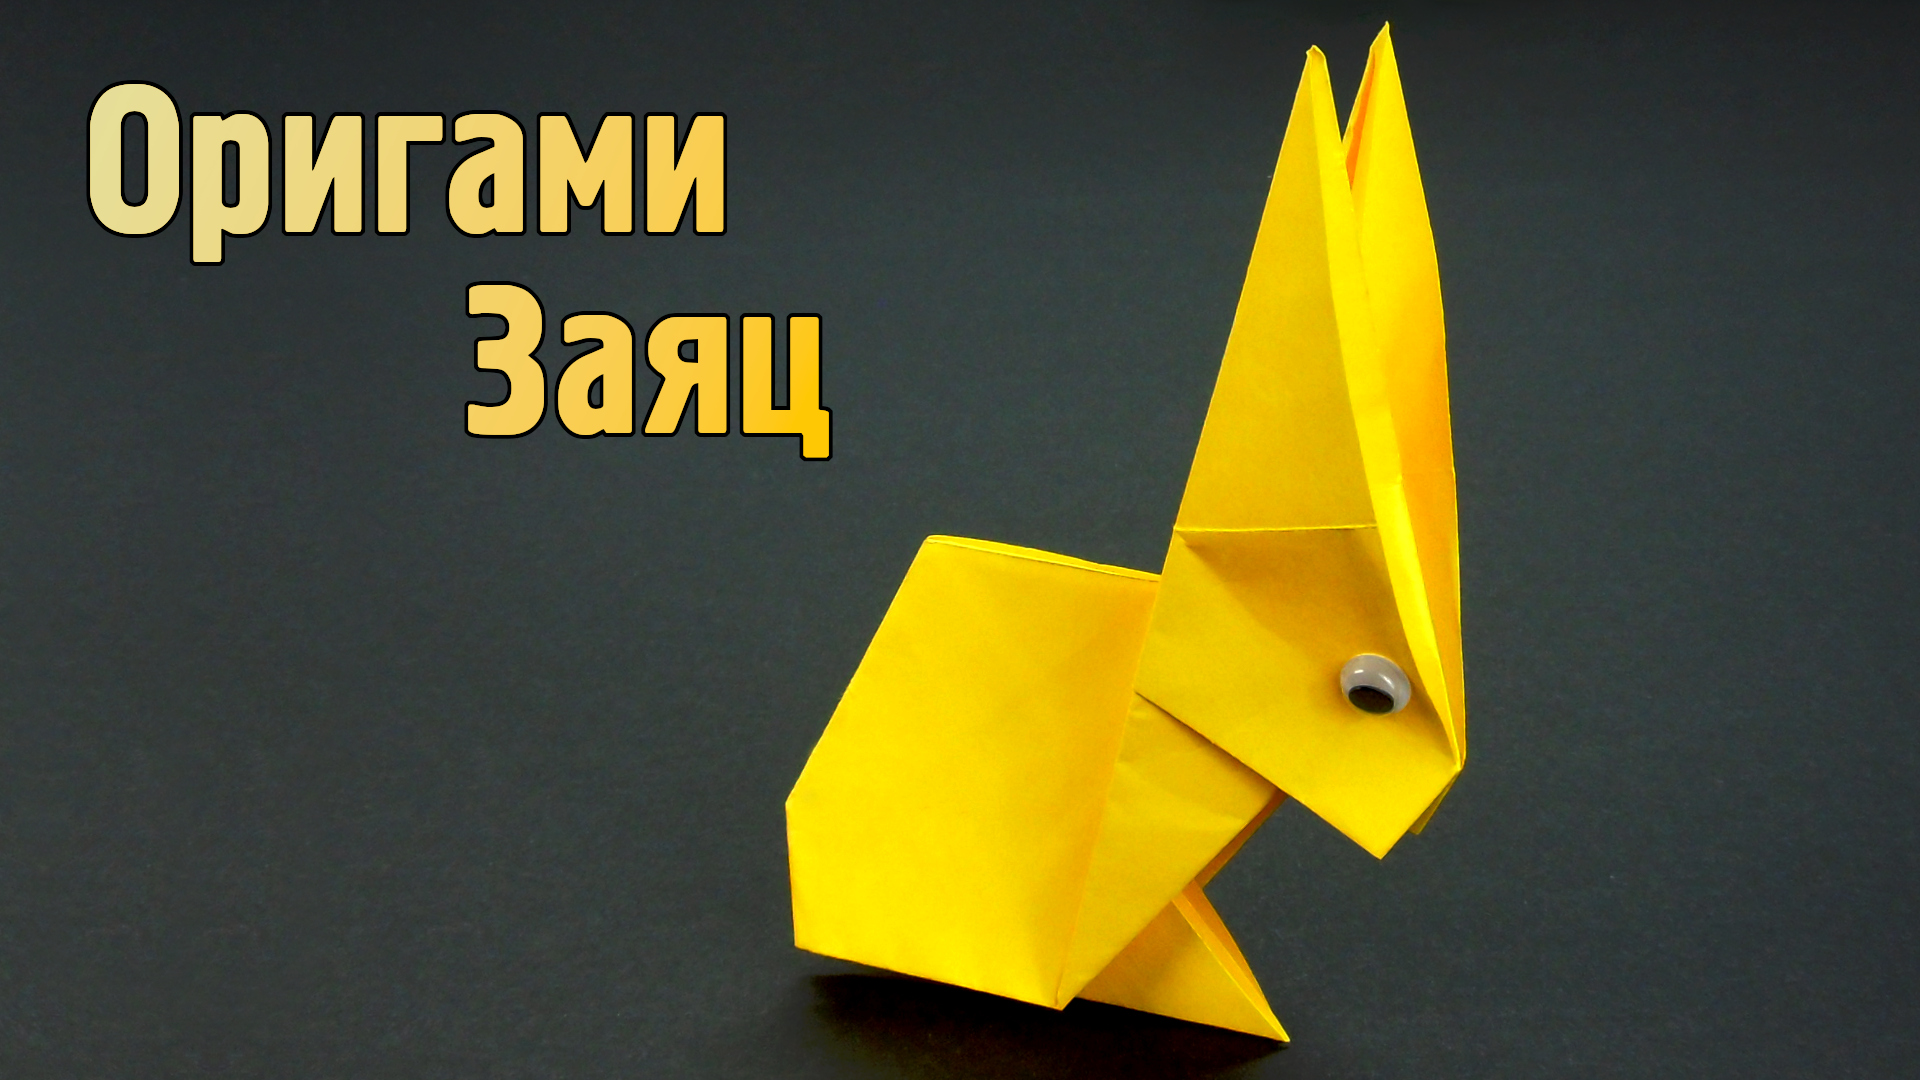 Как сделать Зайчика из бумаги | Оригами Заяц своими руками | Бумажный Кролик для детей без клея